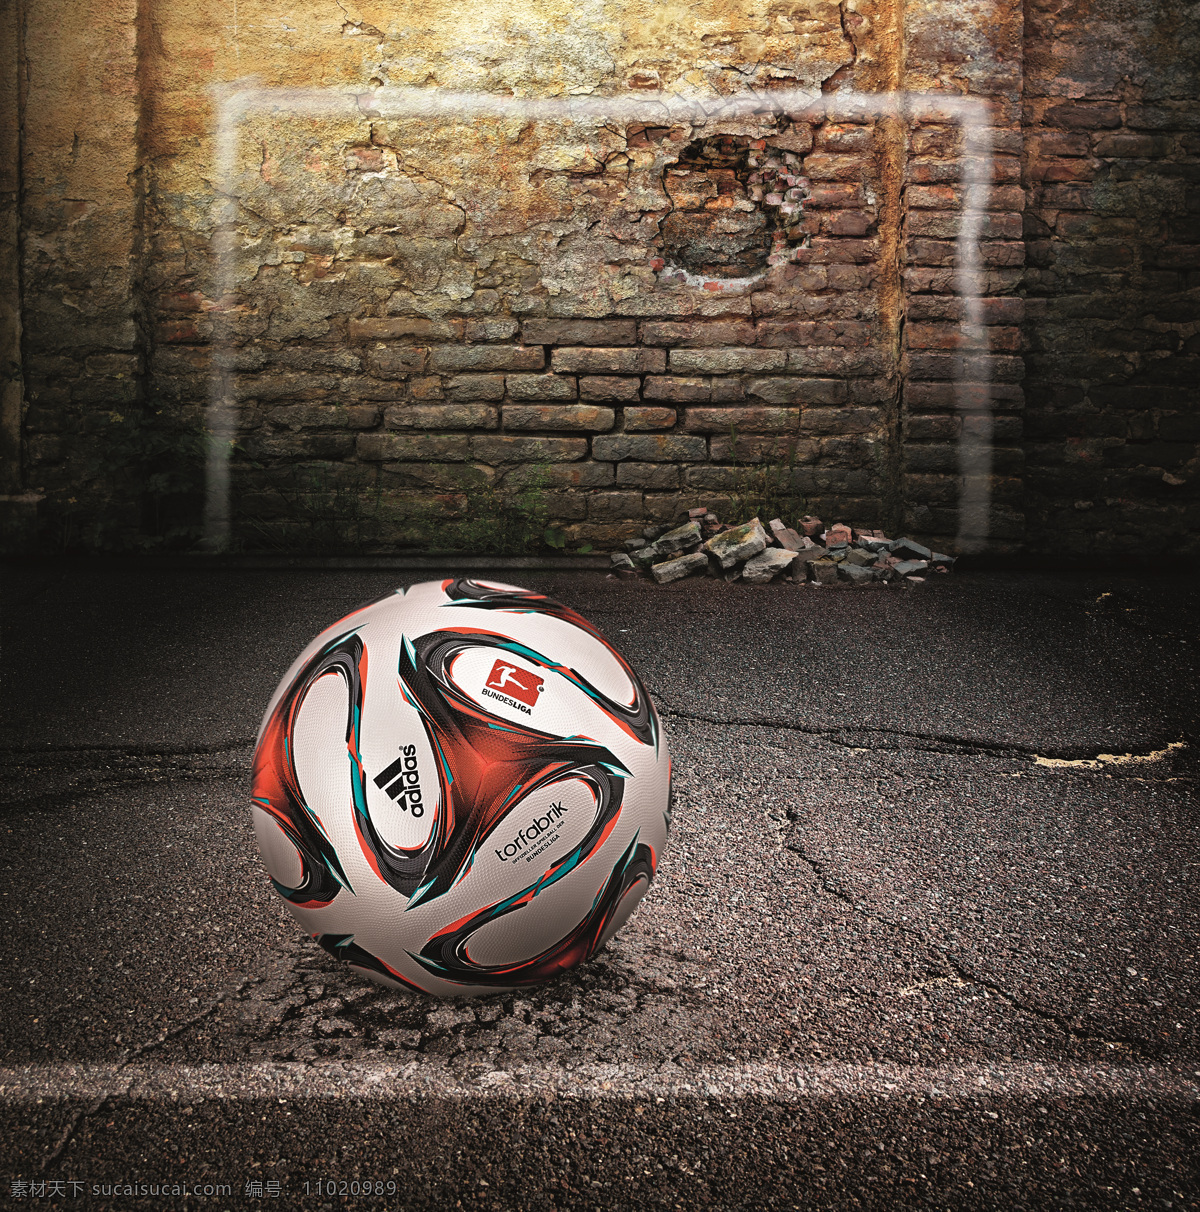 德甲 联赛 比赛 用球 adidas 足球 德甲联赛 比赛用球 广告 体育用品 生活百科